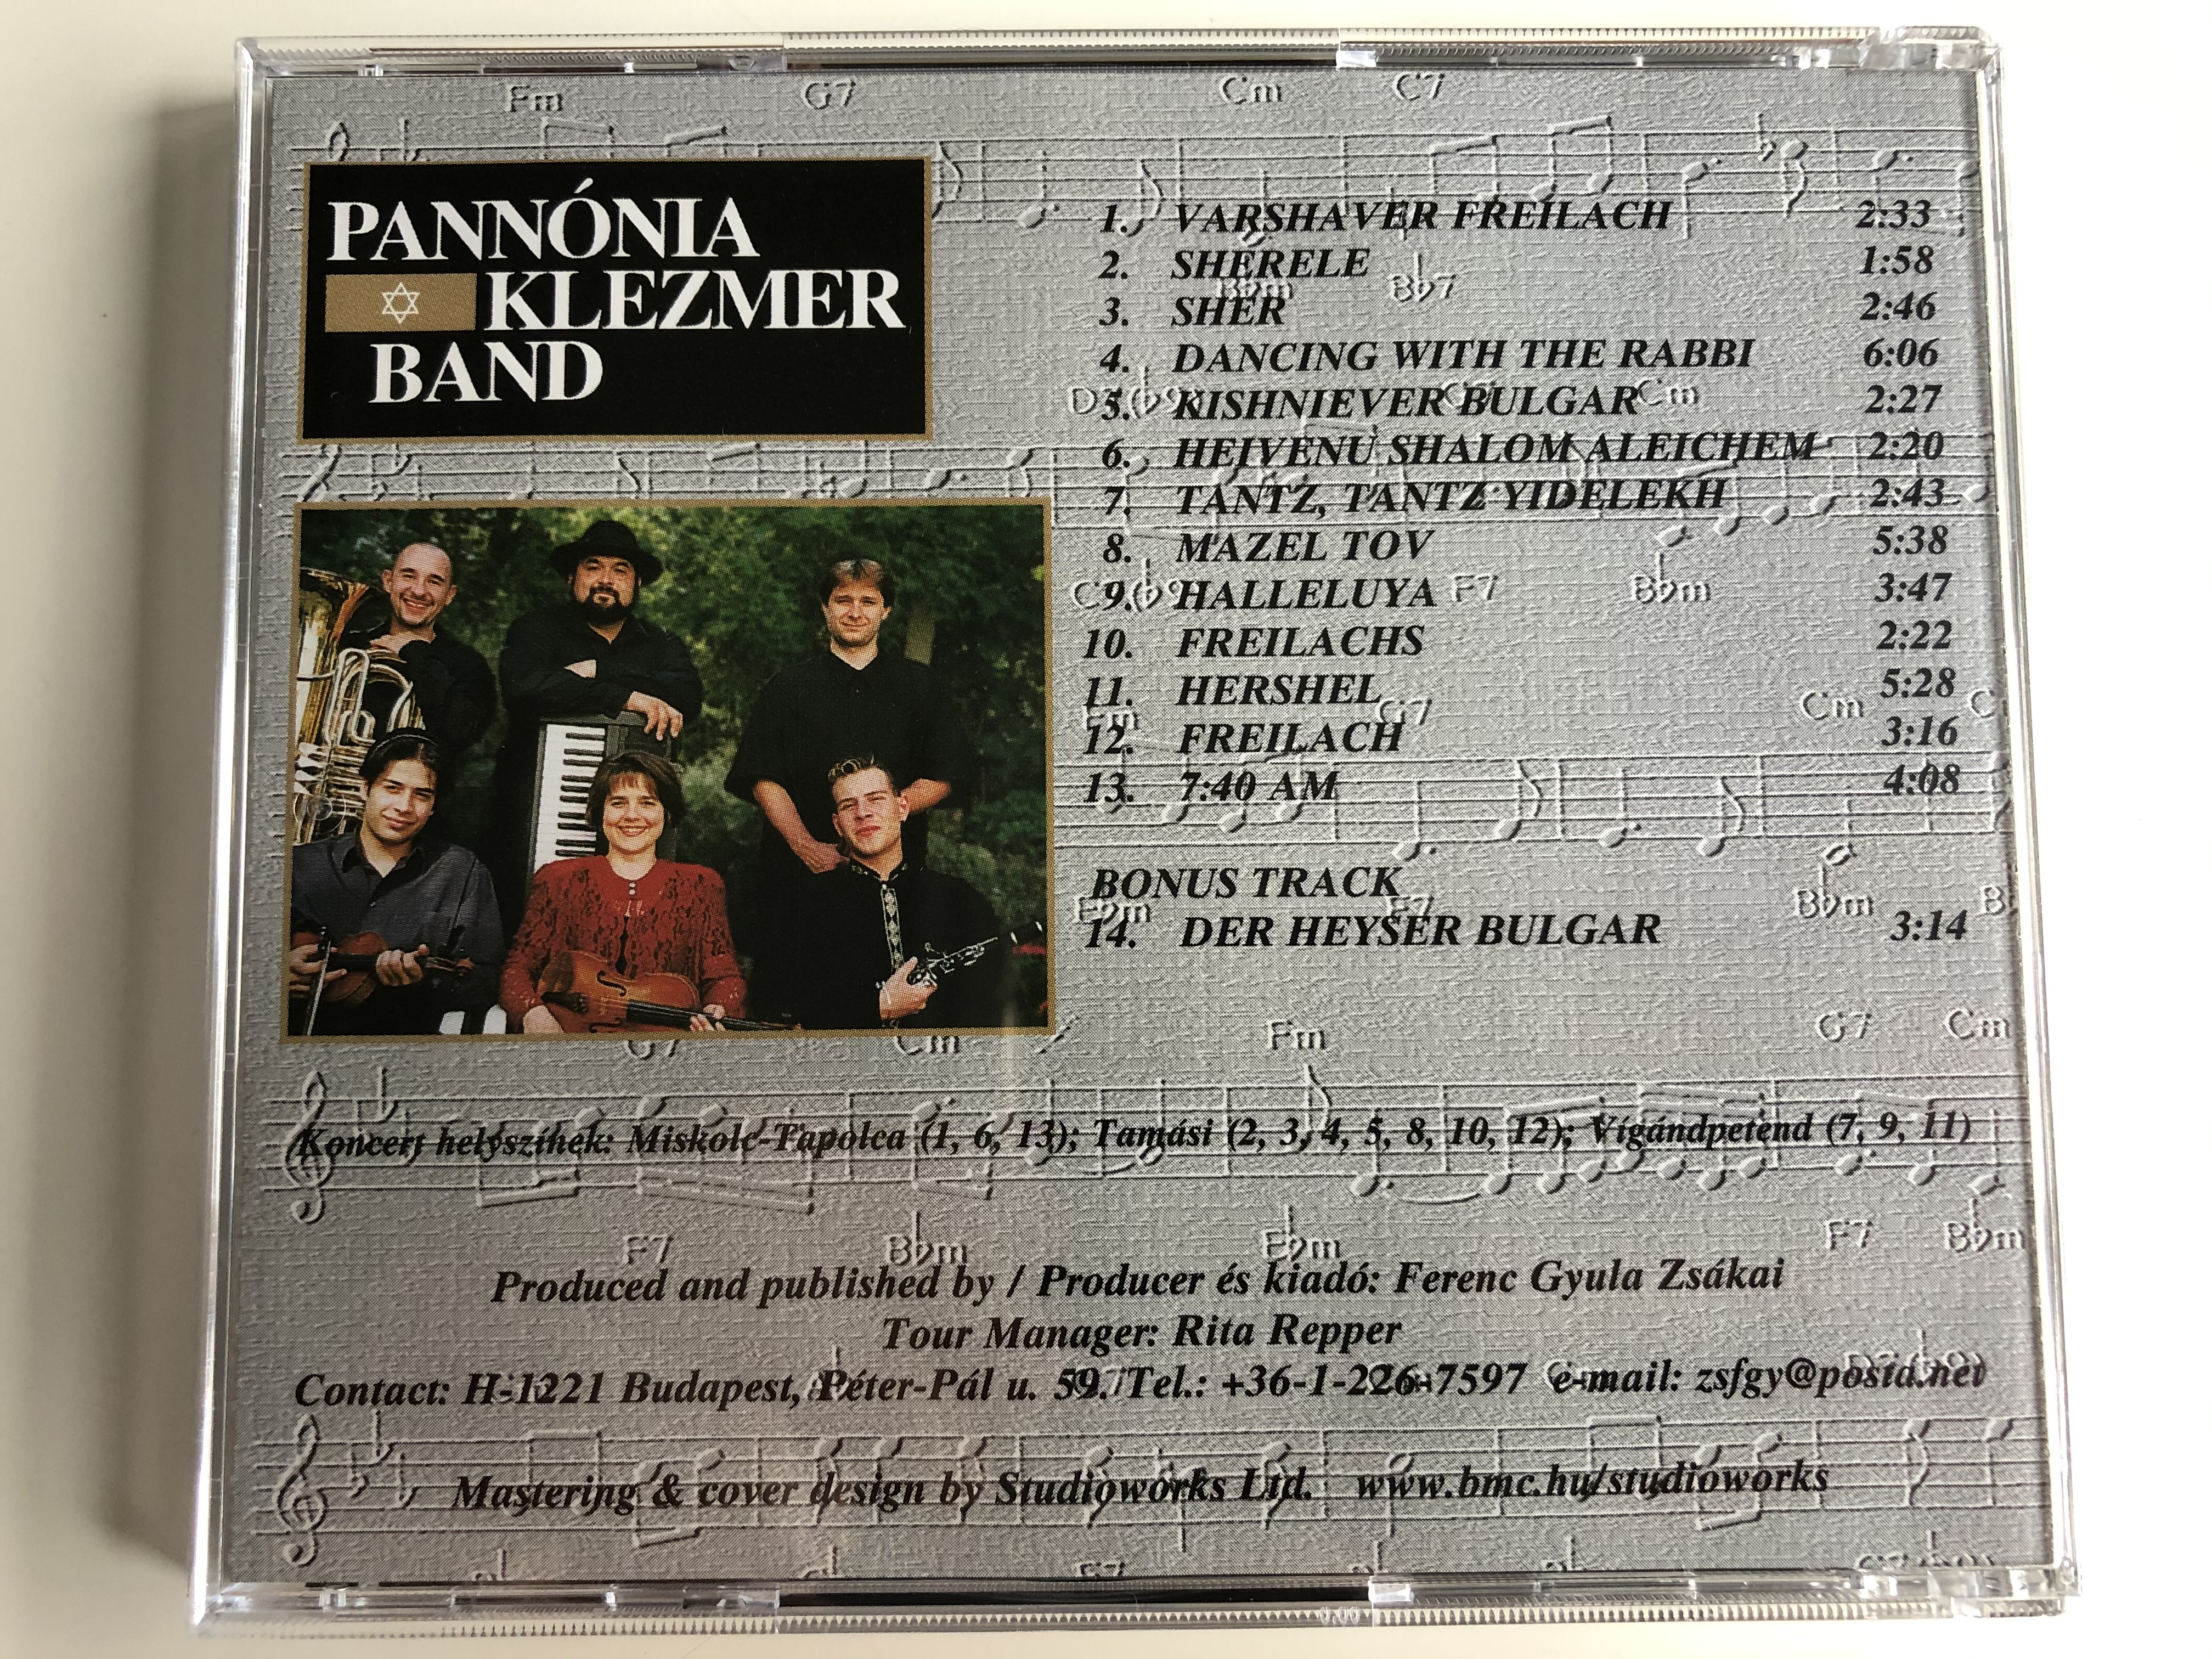 pann-nia-klezmer-band-5760-2000-nyar-summer-elo-koncert-felvetelek-songs-from-live-concerts-megjelent-a-zsido-nyari-fesztival-alkalmabol-limitalt-peldanyszamban-audio-cd-2000-pkb20-6-.jpg